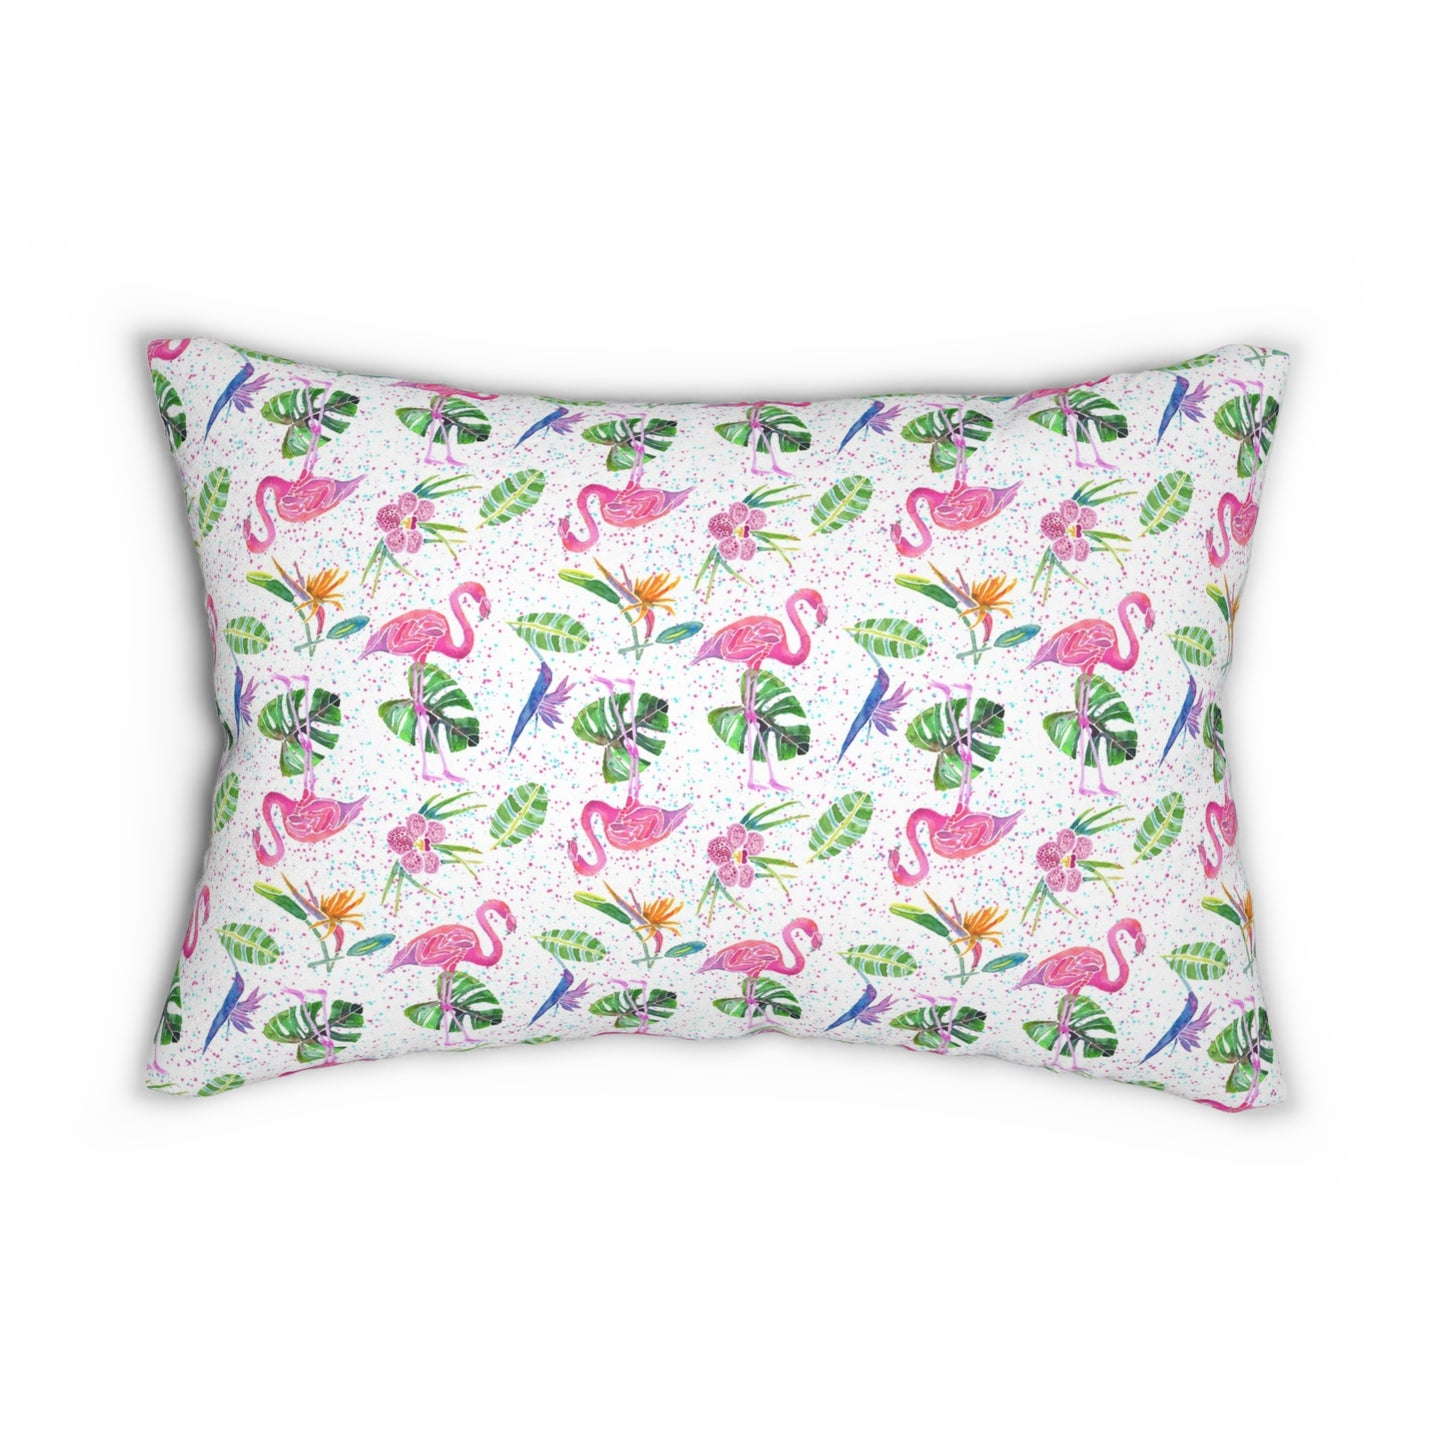 Flamingo Party Spun Polyester Lumbar Pillow